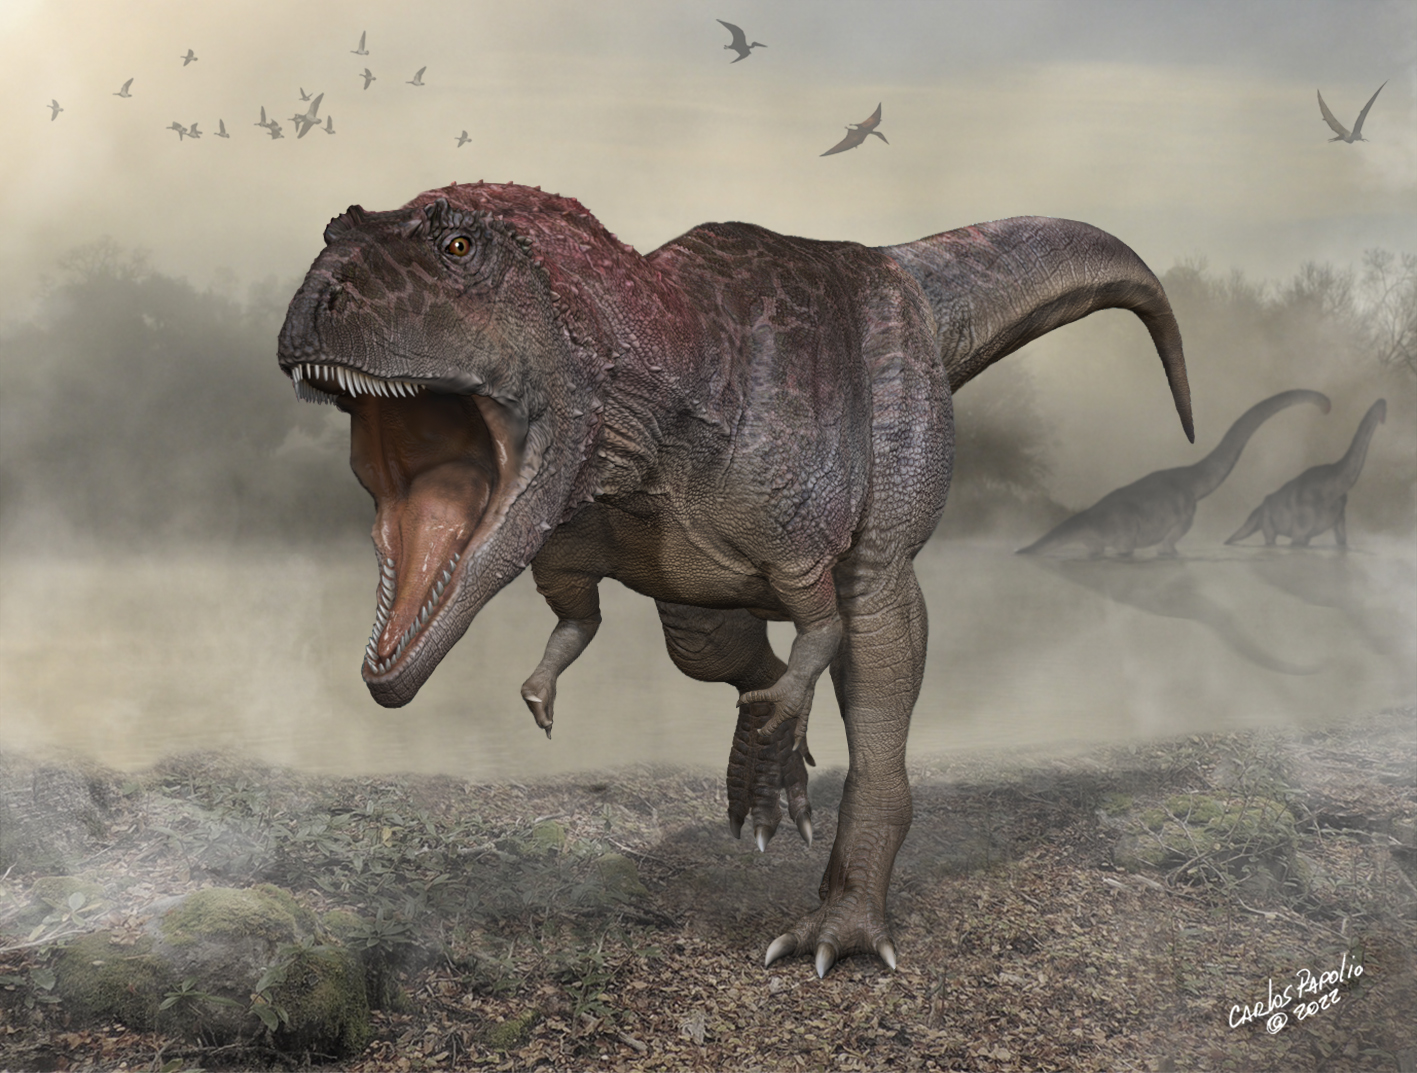 El dinosaurio Meraxes gigas vivió hace más de 93 millones de años en Patagonia Norte en la Argentina (Ilustración de Carlos Papolio)
